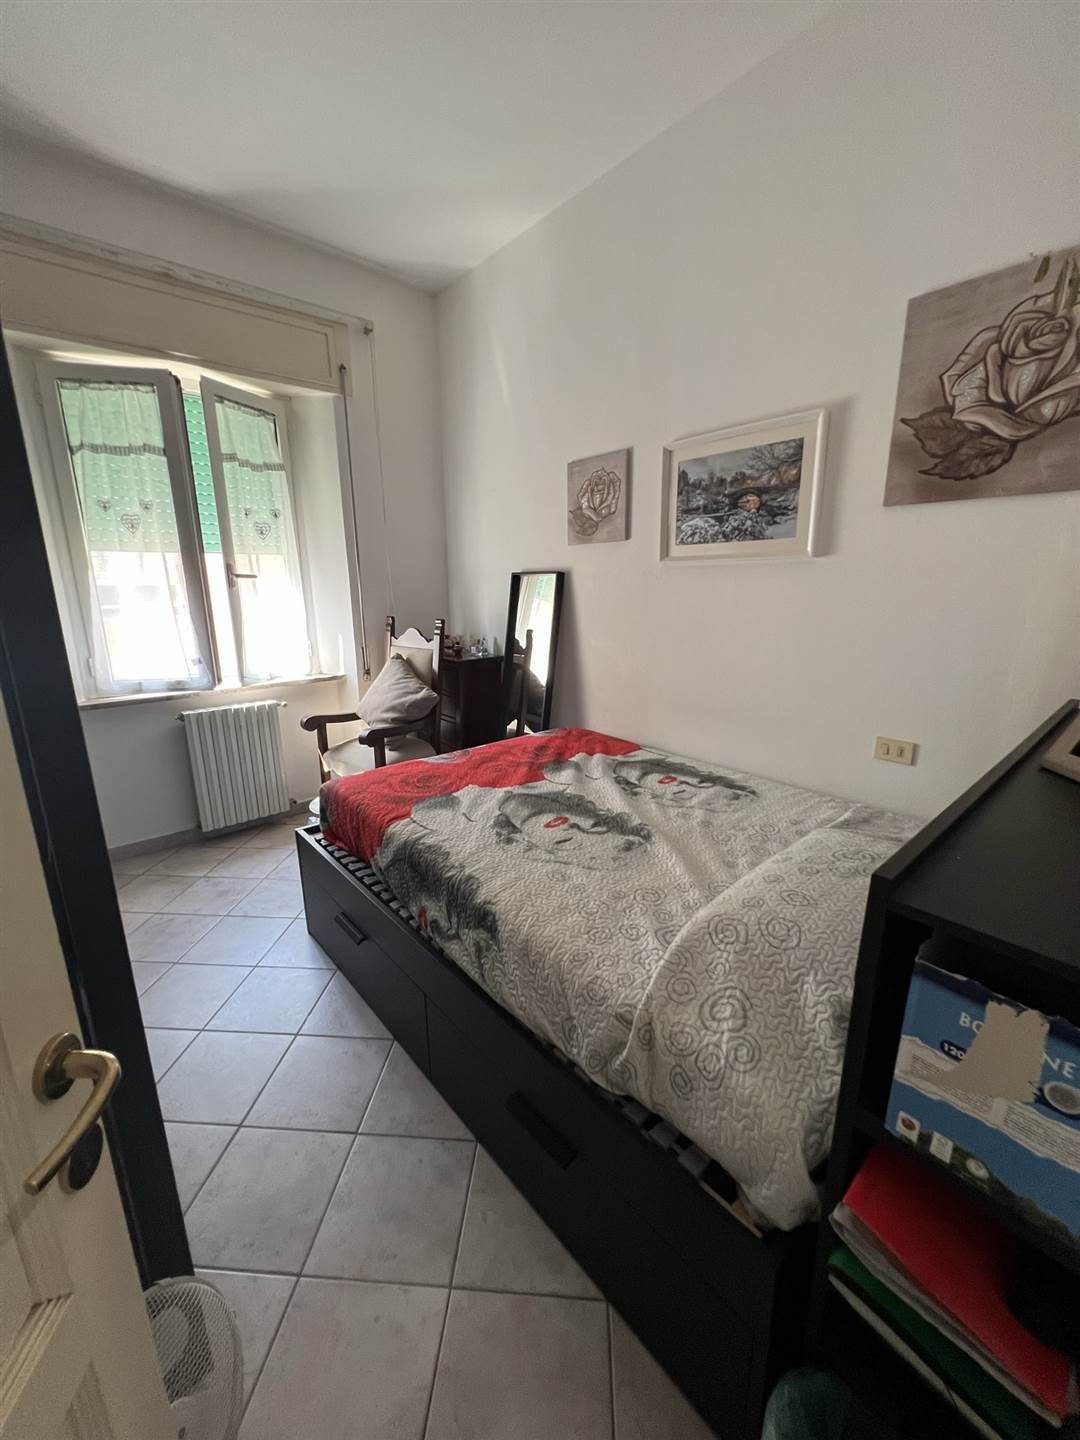 Appartamento in vendita a Castagneto Carducci, 4 locali, zona ratico, prezzo € 145.000 | PortaleAgenzieImmobiliari.it